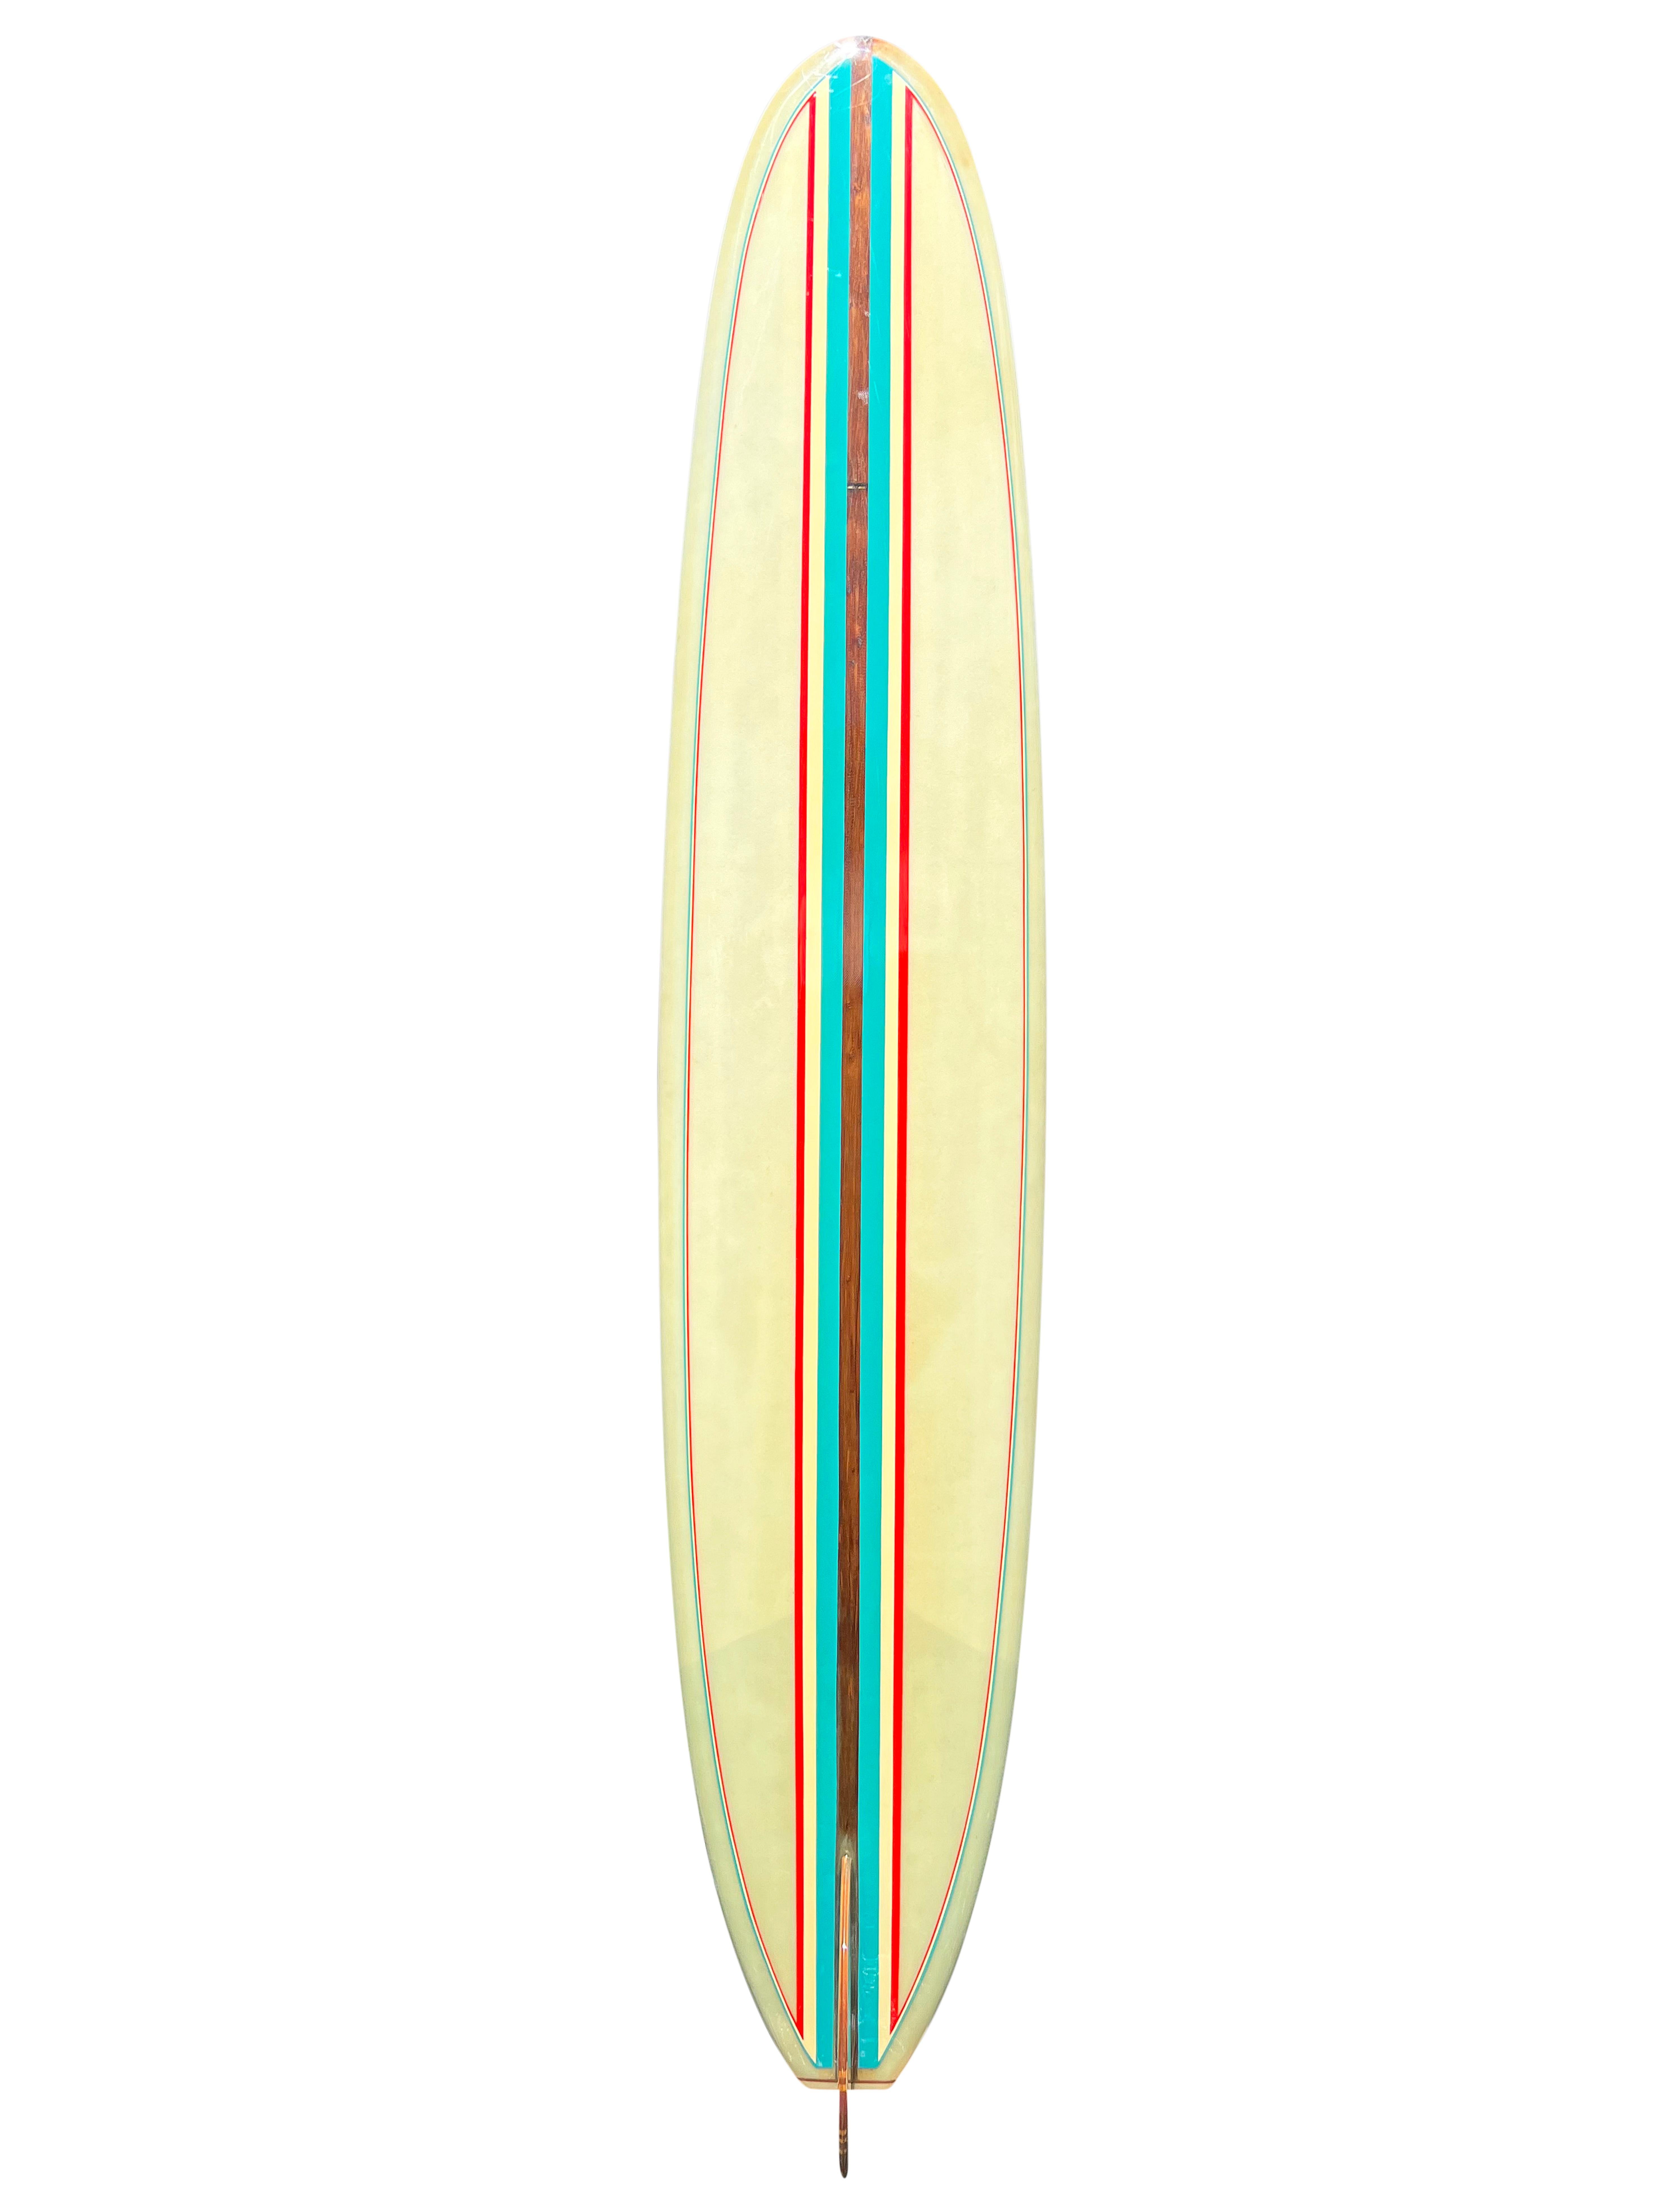 Vintage 1960er Hansen klassisches Longboard aus den frühen 1960er Jahren. Schönes Farbschema in Aquablau und Rot mit passenden Nadelstreifen. Unglaubliche 21 Stück Rotholz/Balsaholz mit klarem Glasperlenhalo. Ein bemerkenswertes Beispiel für ein